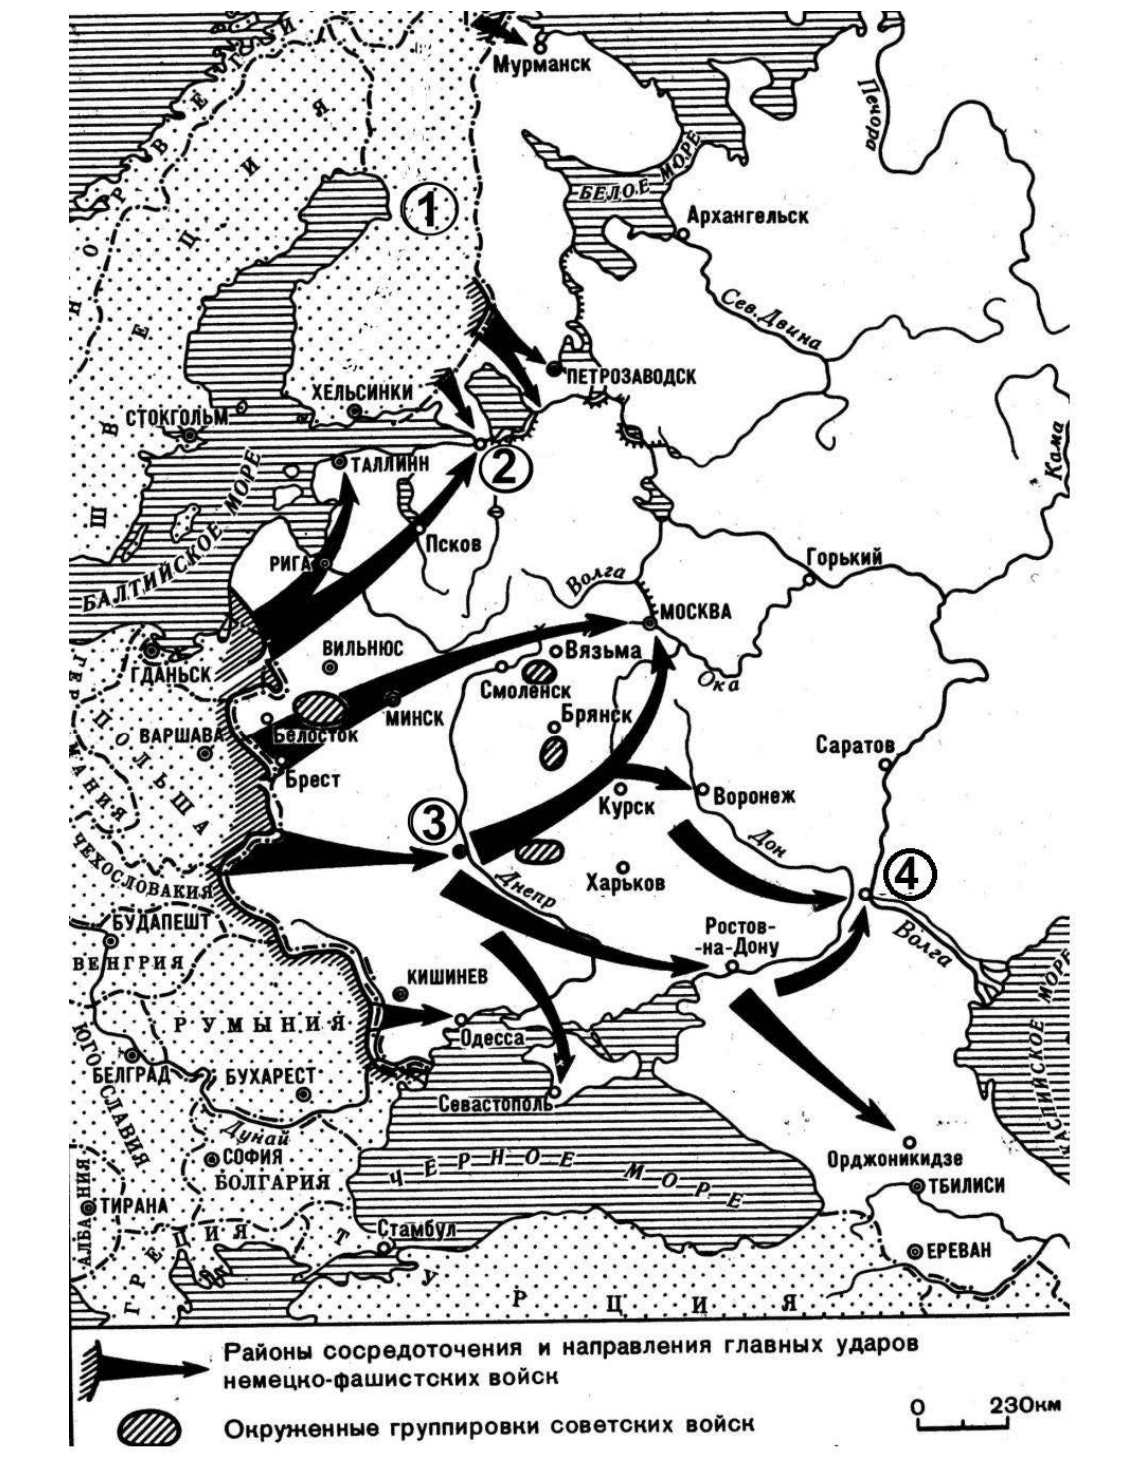 Операция барбаросса была. Карта наступления фашистов на СССР 1941. Карта плана Барбаросса 1941. План нападения фашистской Германии 1941. План нападения СССР на Германию в 1941.